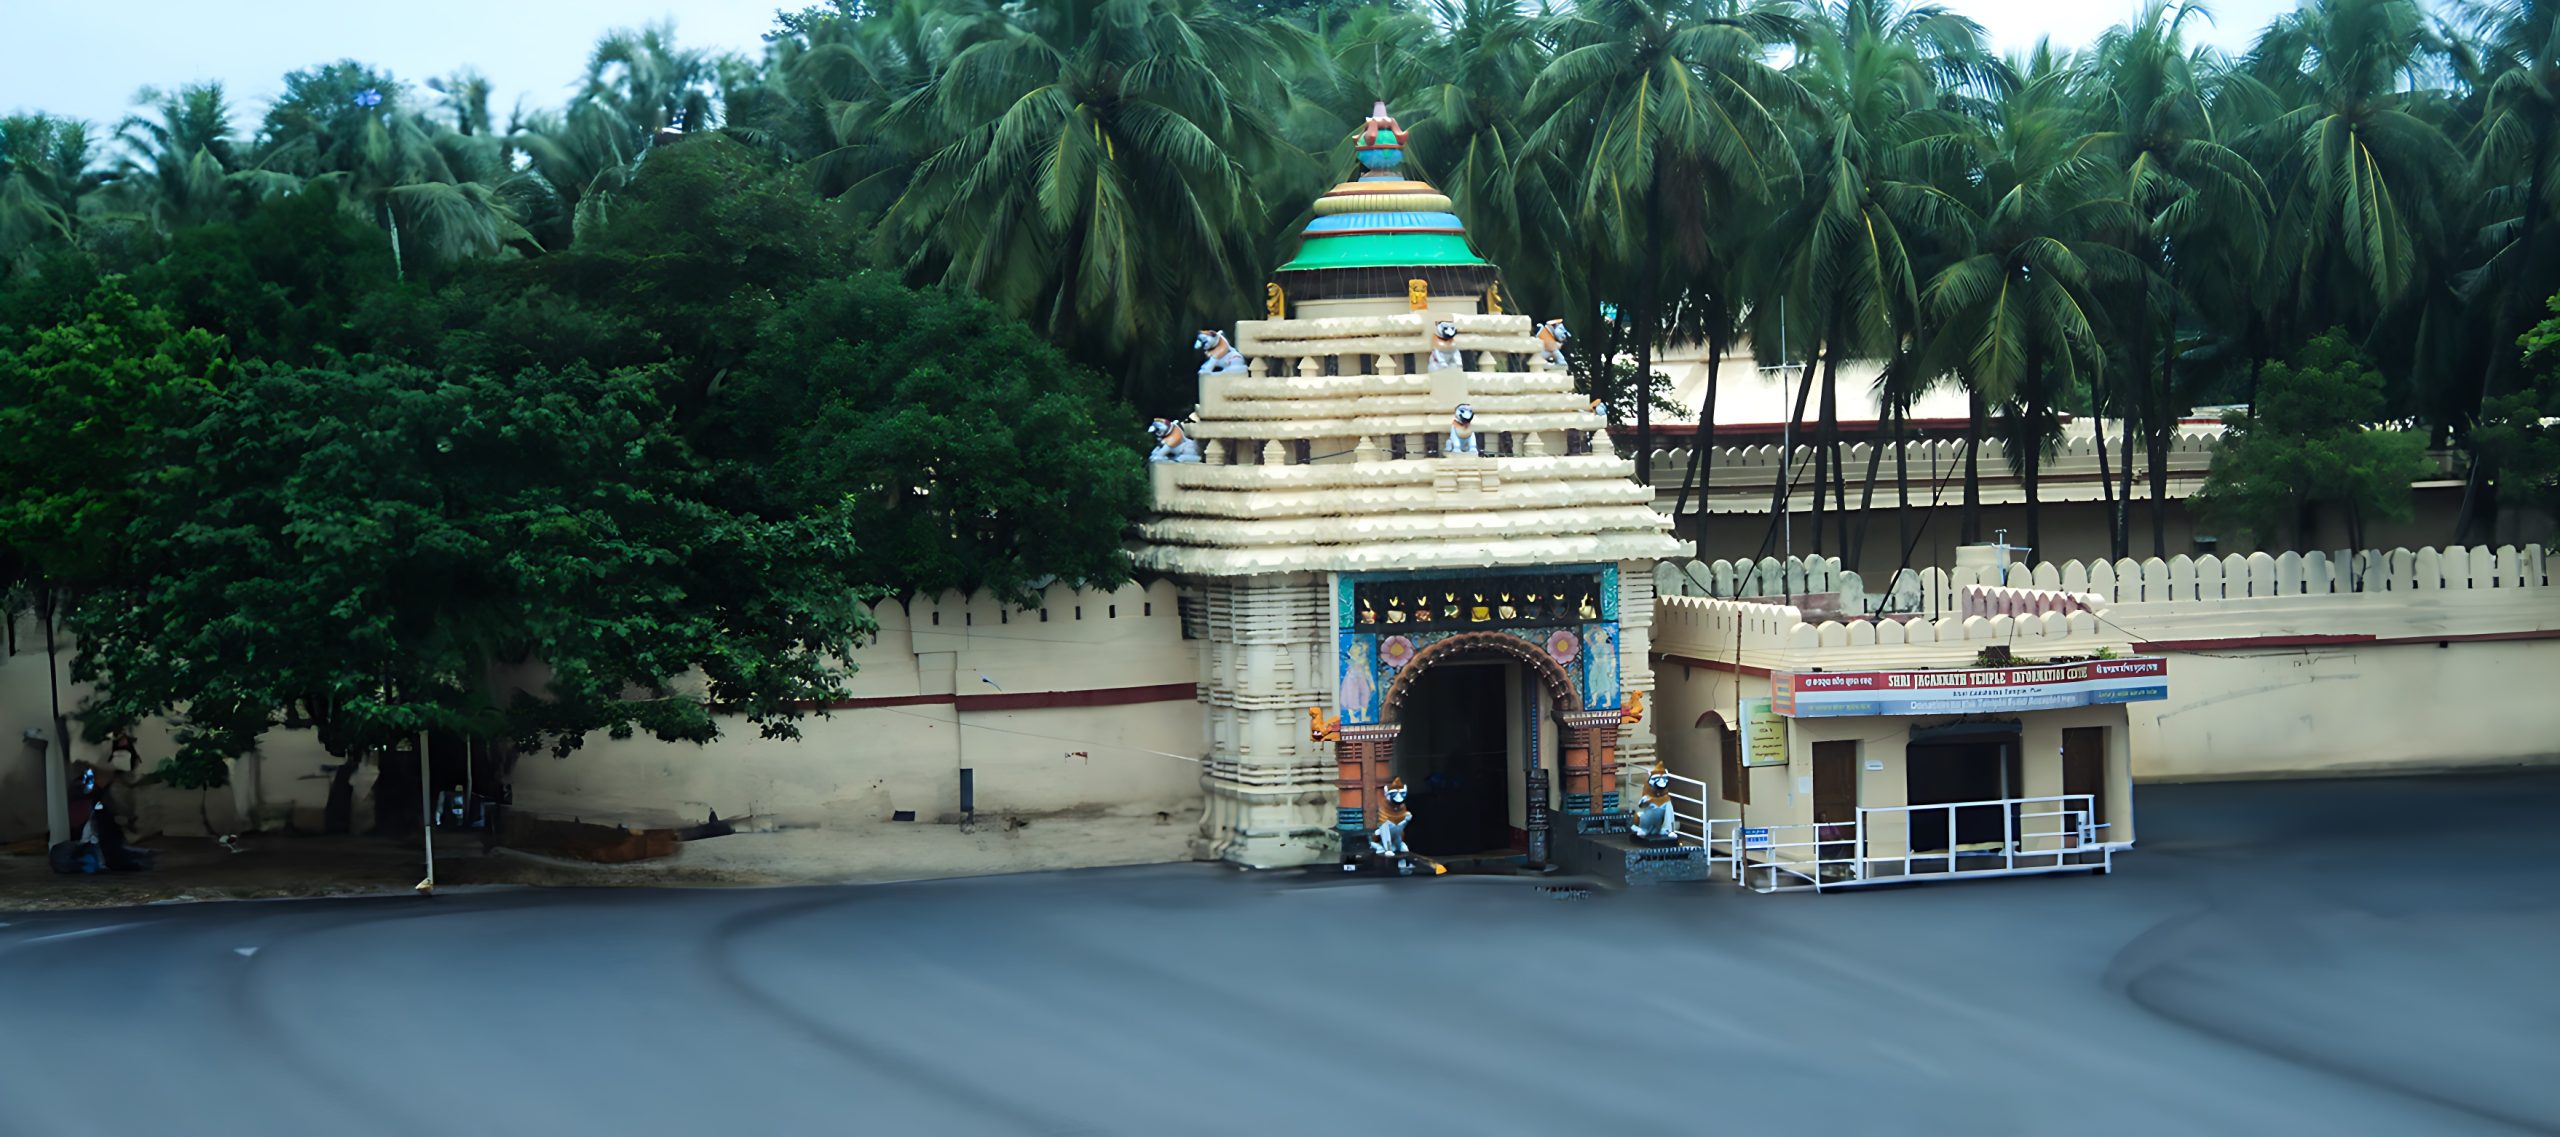 gundicha temple-puri